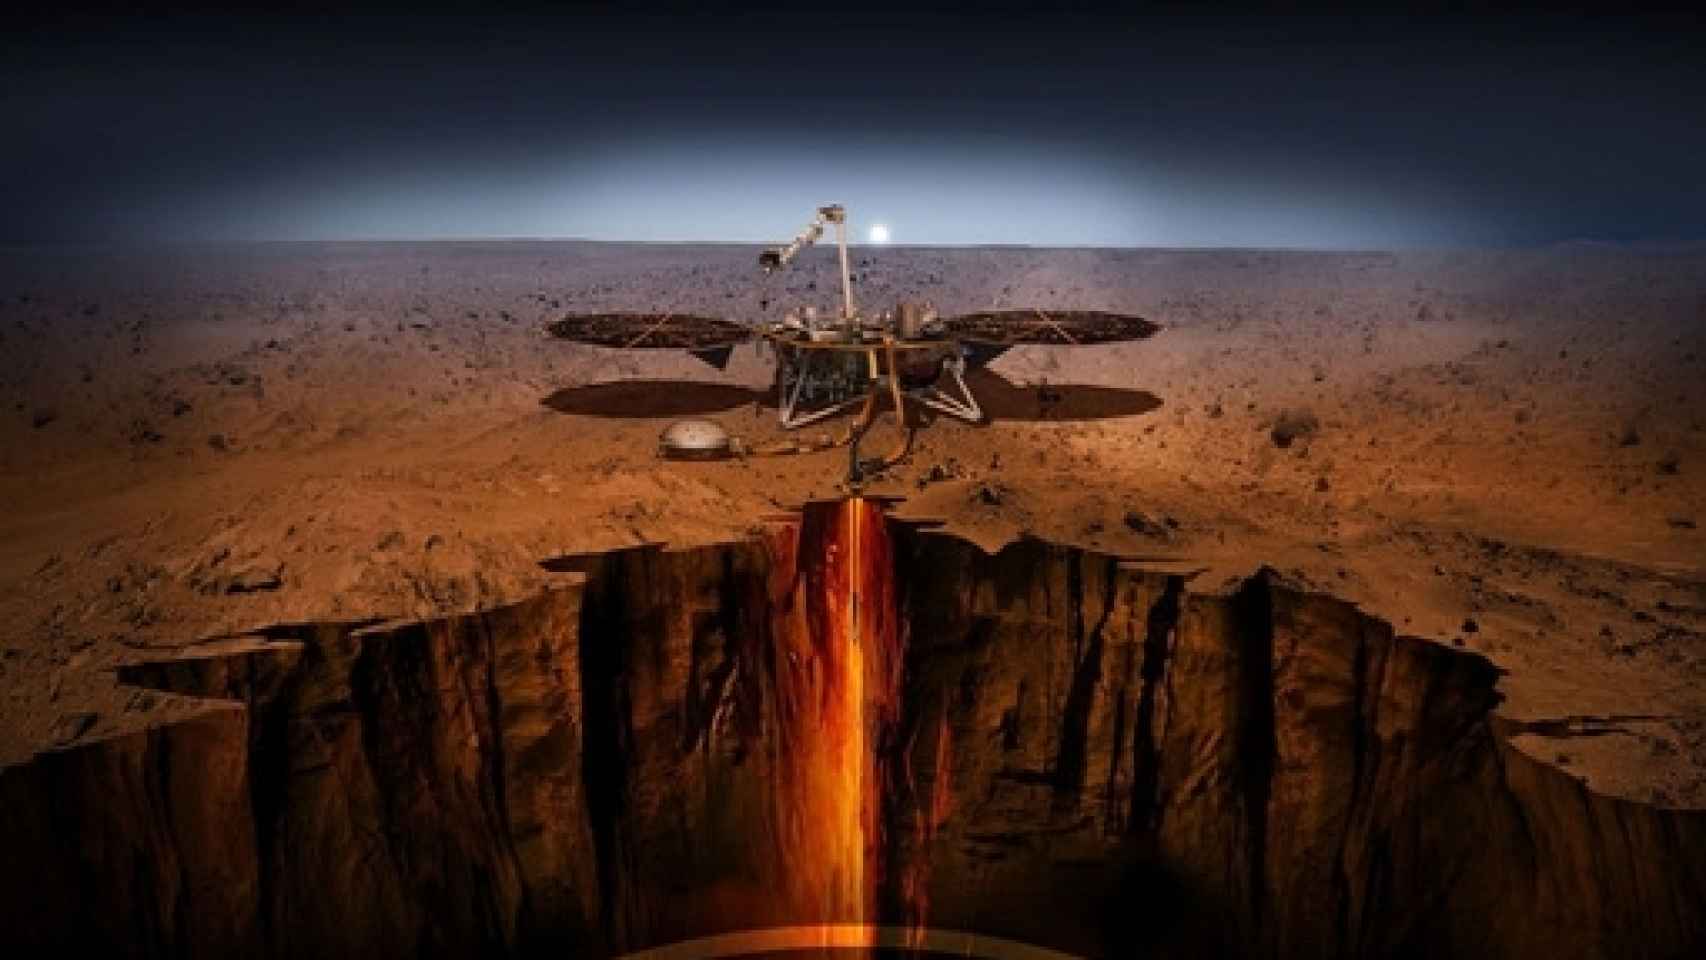 Image: InSight en las profundidades de Marte